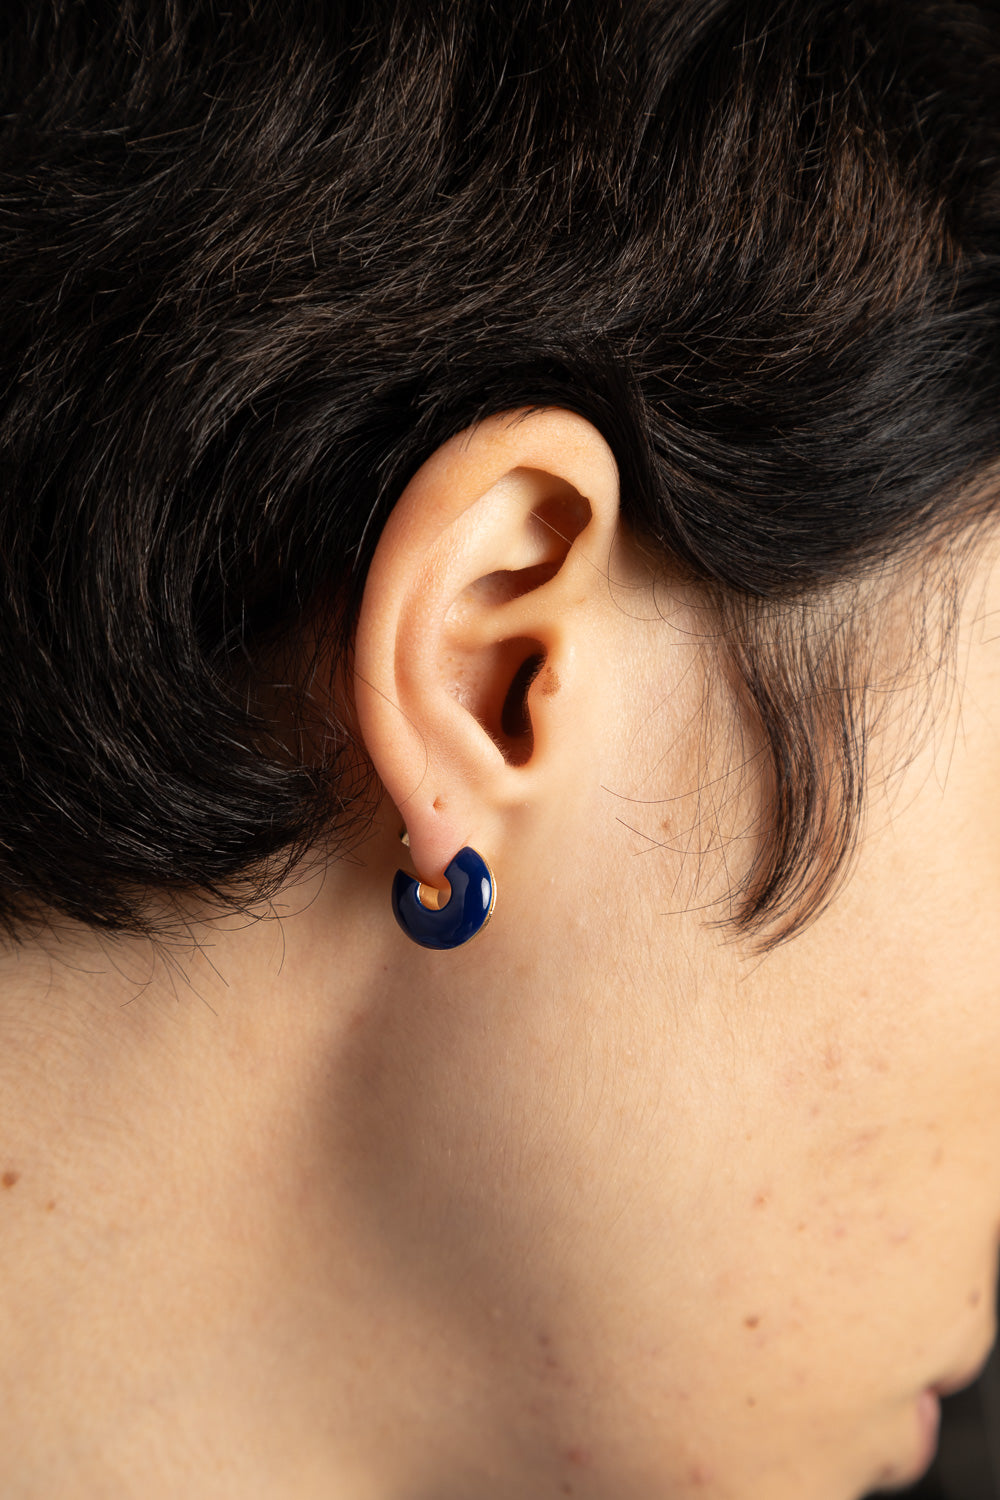 Double trouble earrings